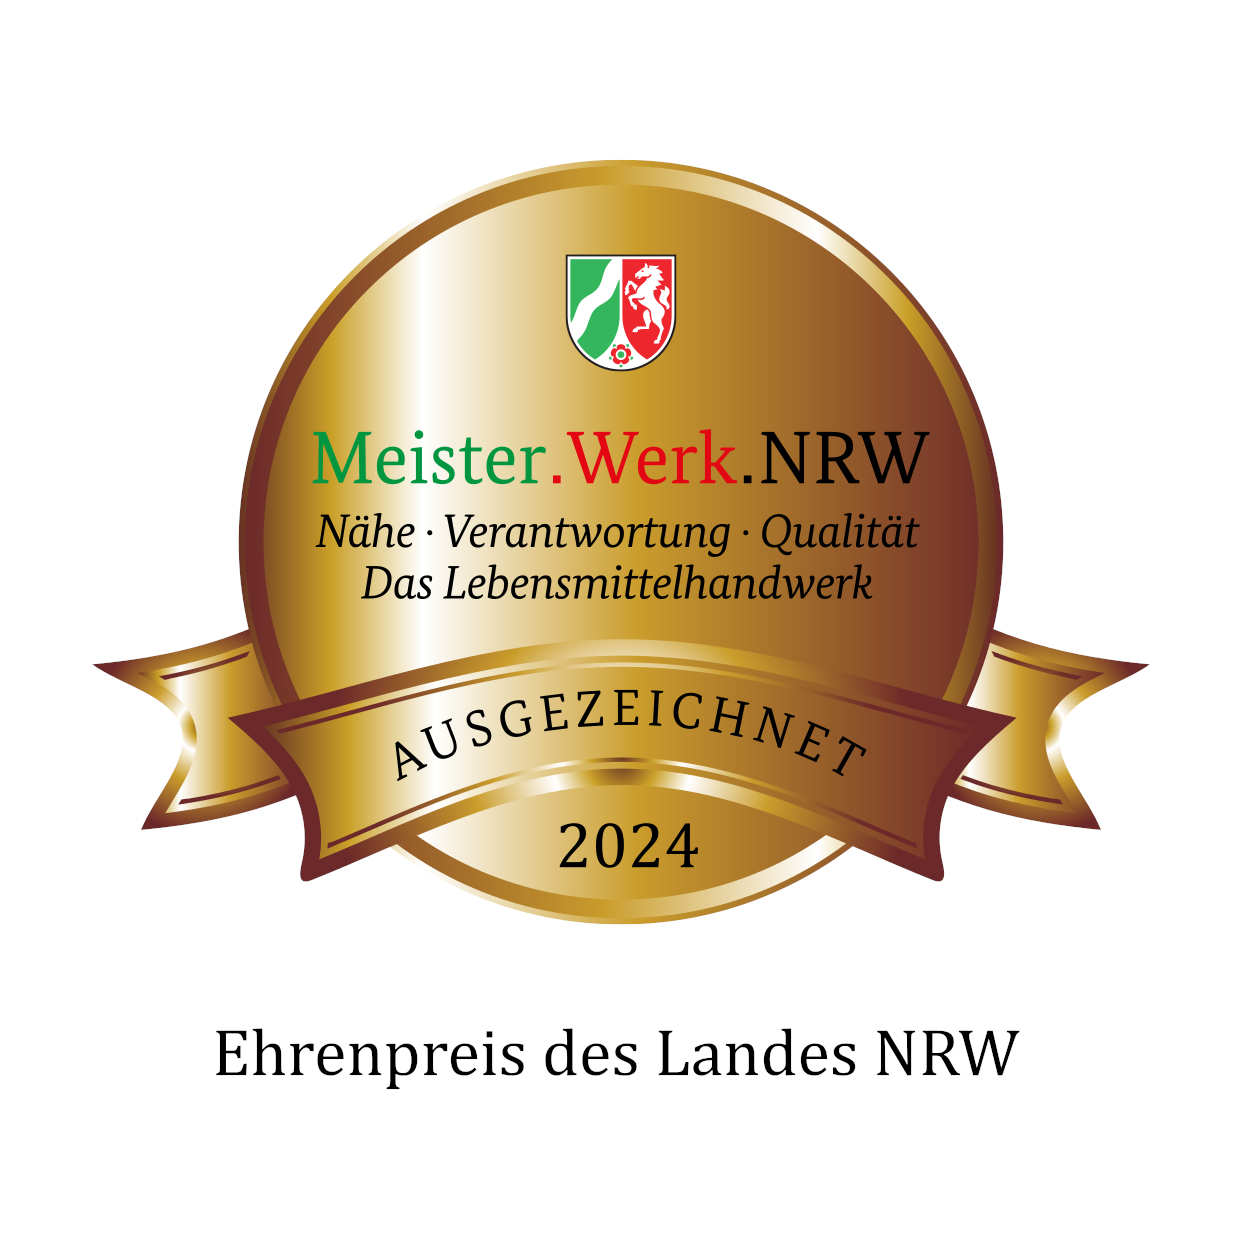 Meister.Werk.NRW - Ehrenpreis des Landes NRW